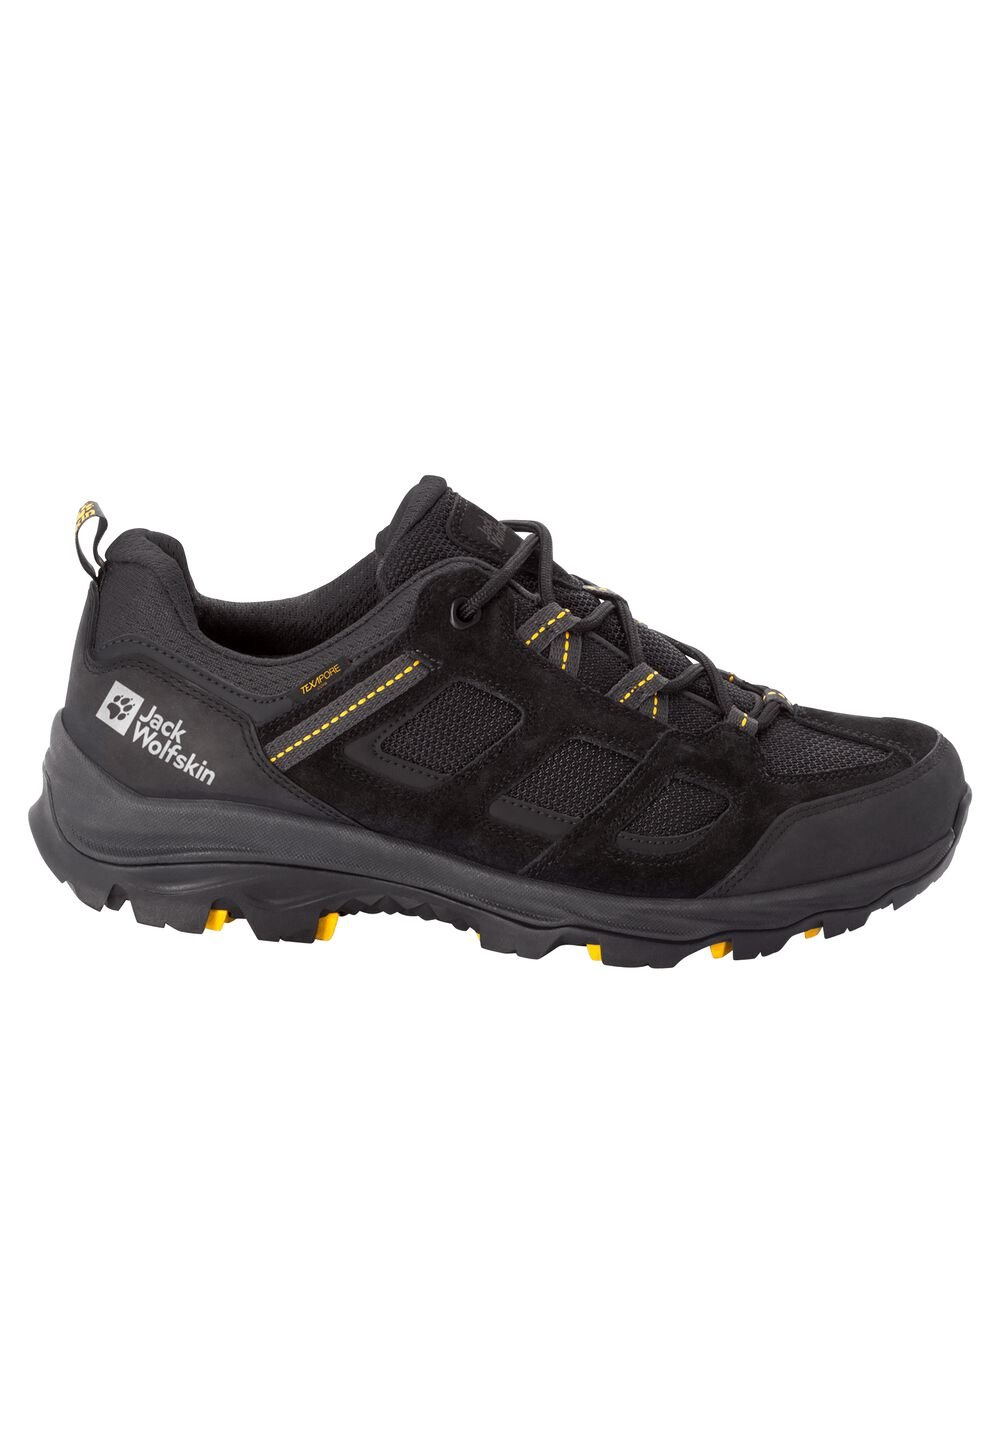 Chaussures de randonnée imperméables hommes Vojo 3 Texapore Low Men 6 noir black / burly yellow XT